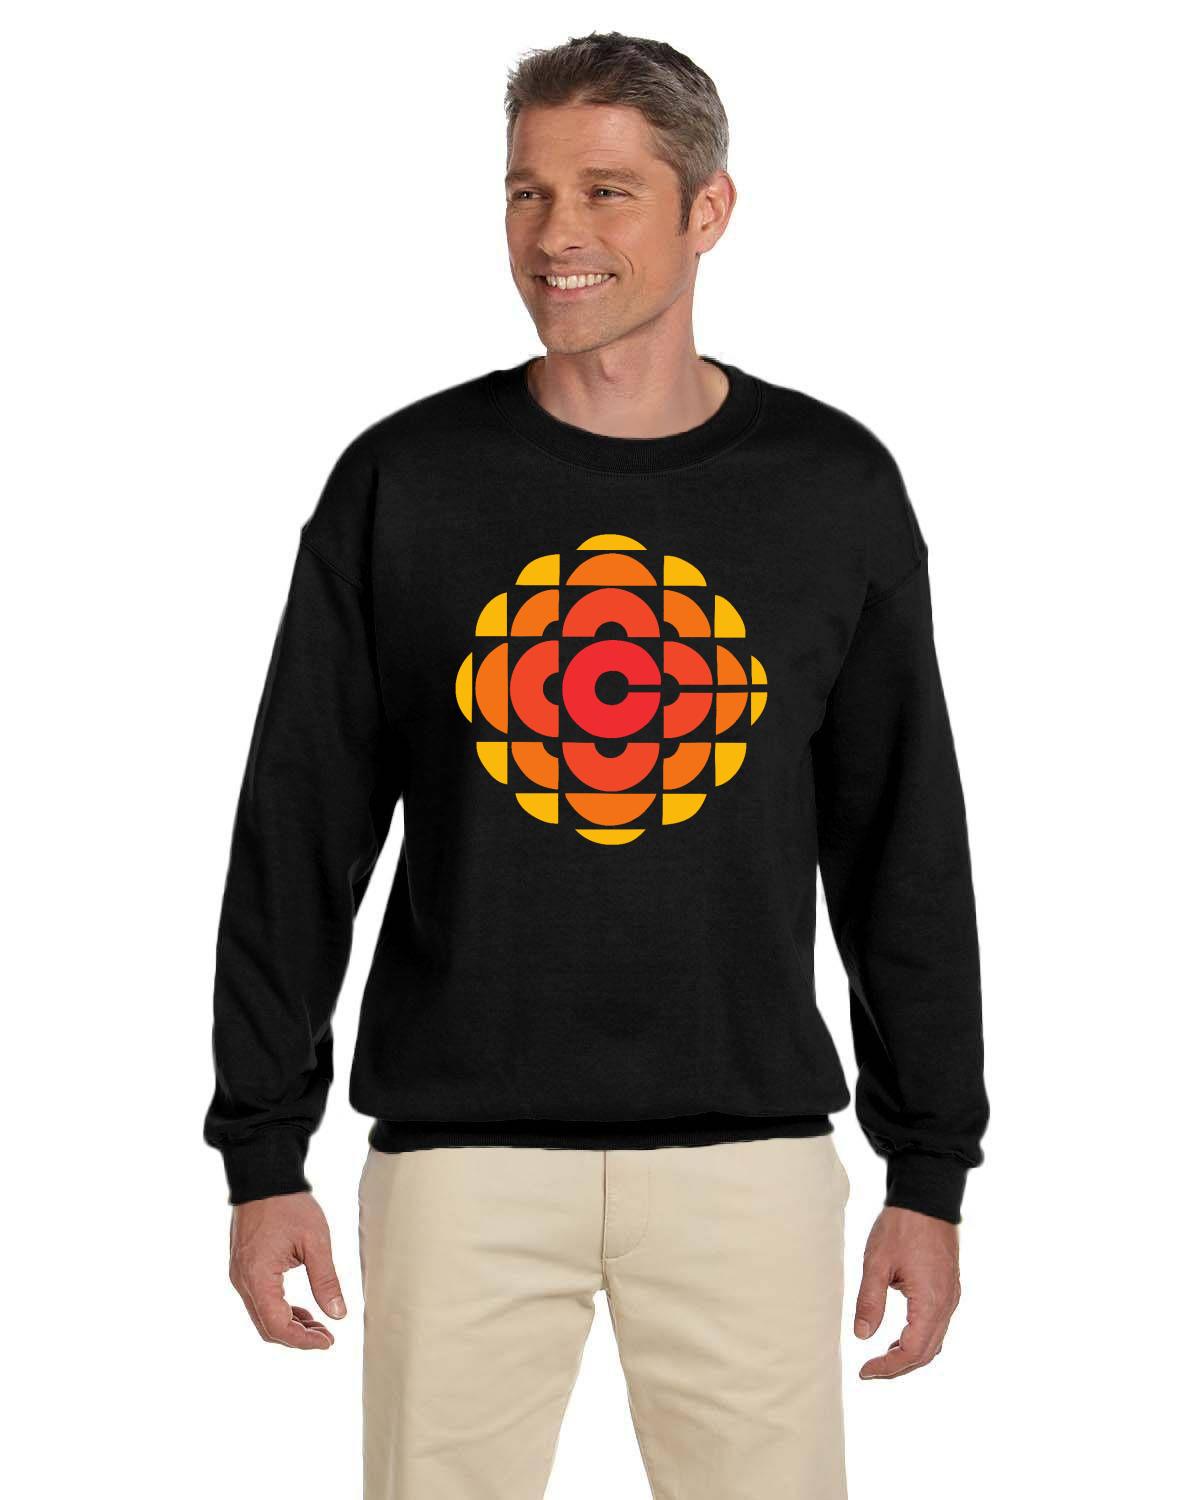 CBC 70's Retro Gem Logo Sweatshirt, Canadian Nostalgia, Officially Licensed CBC Apparel